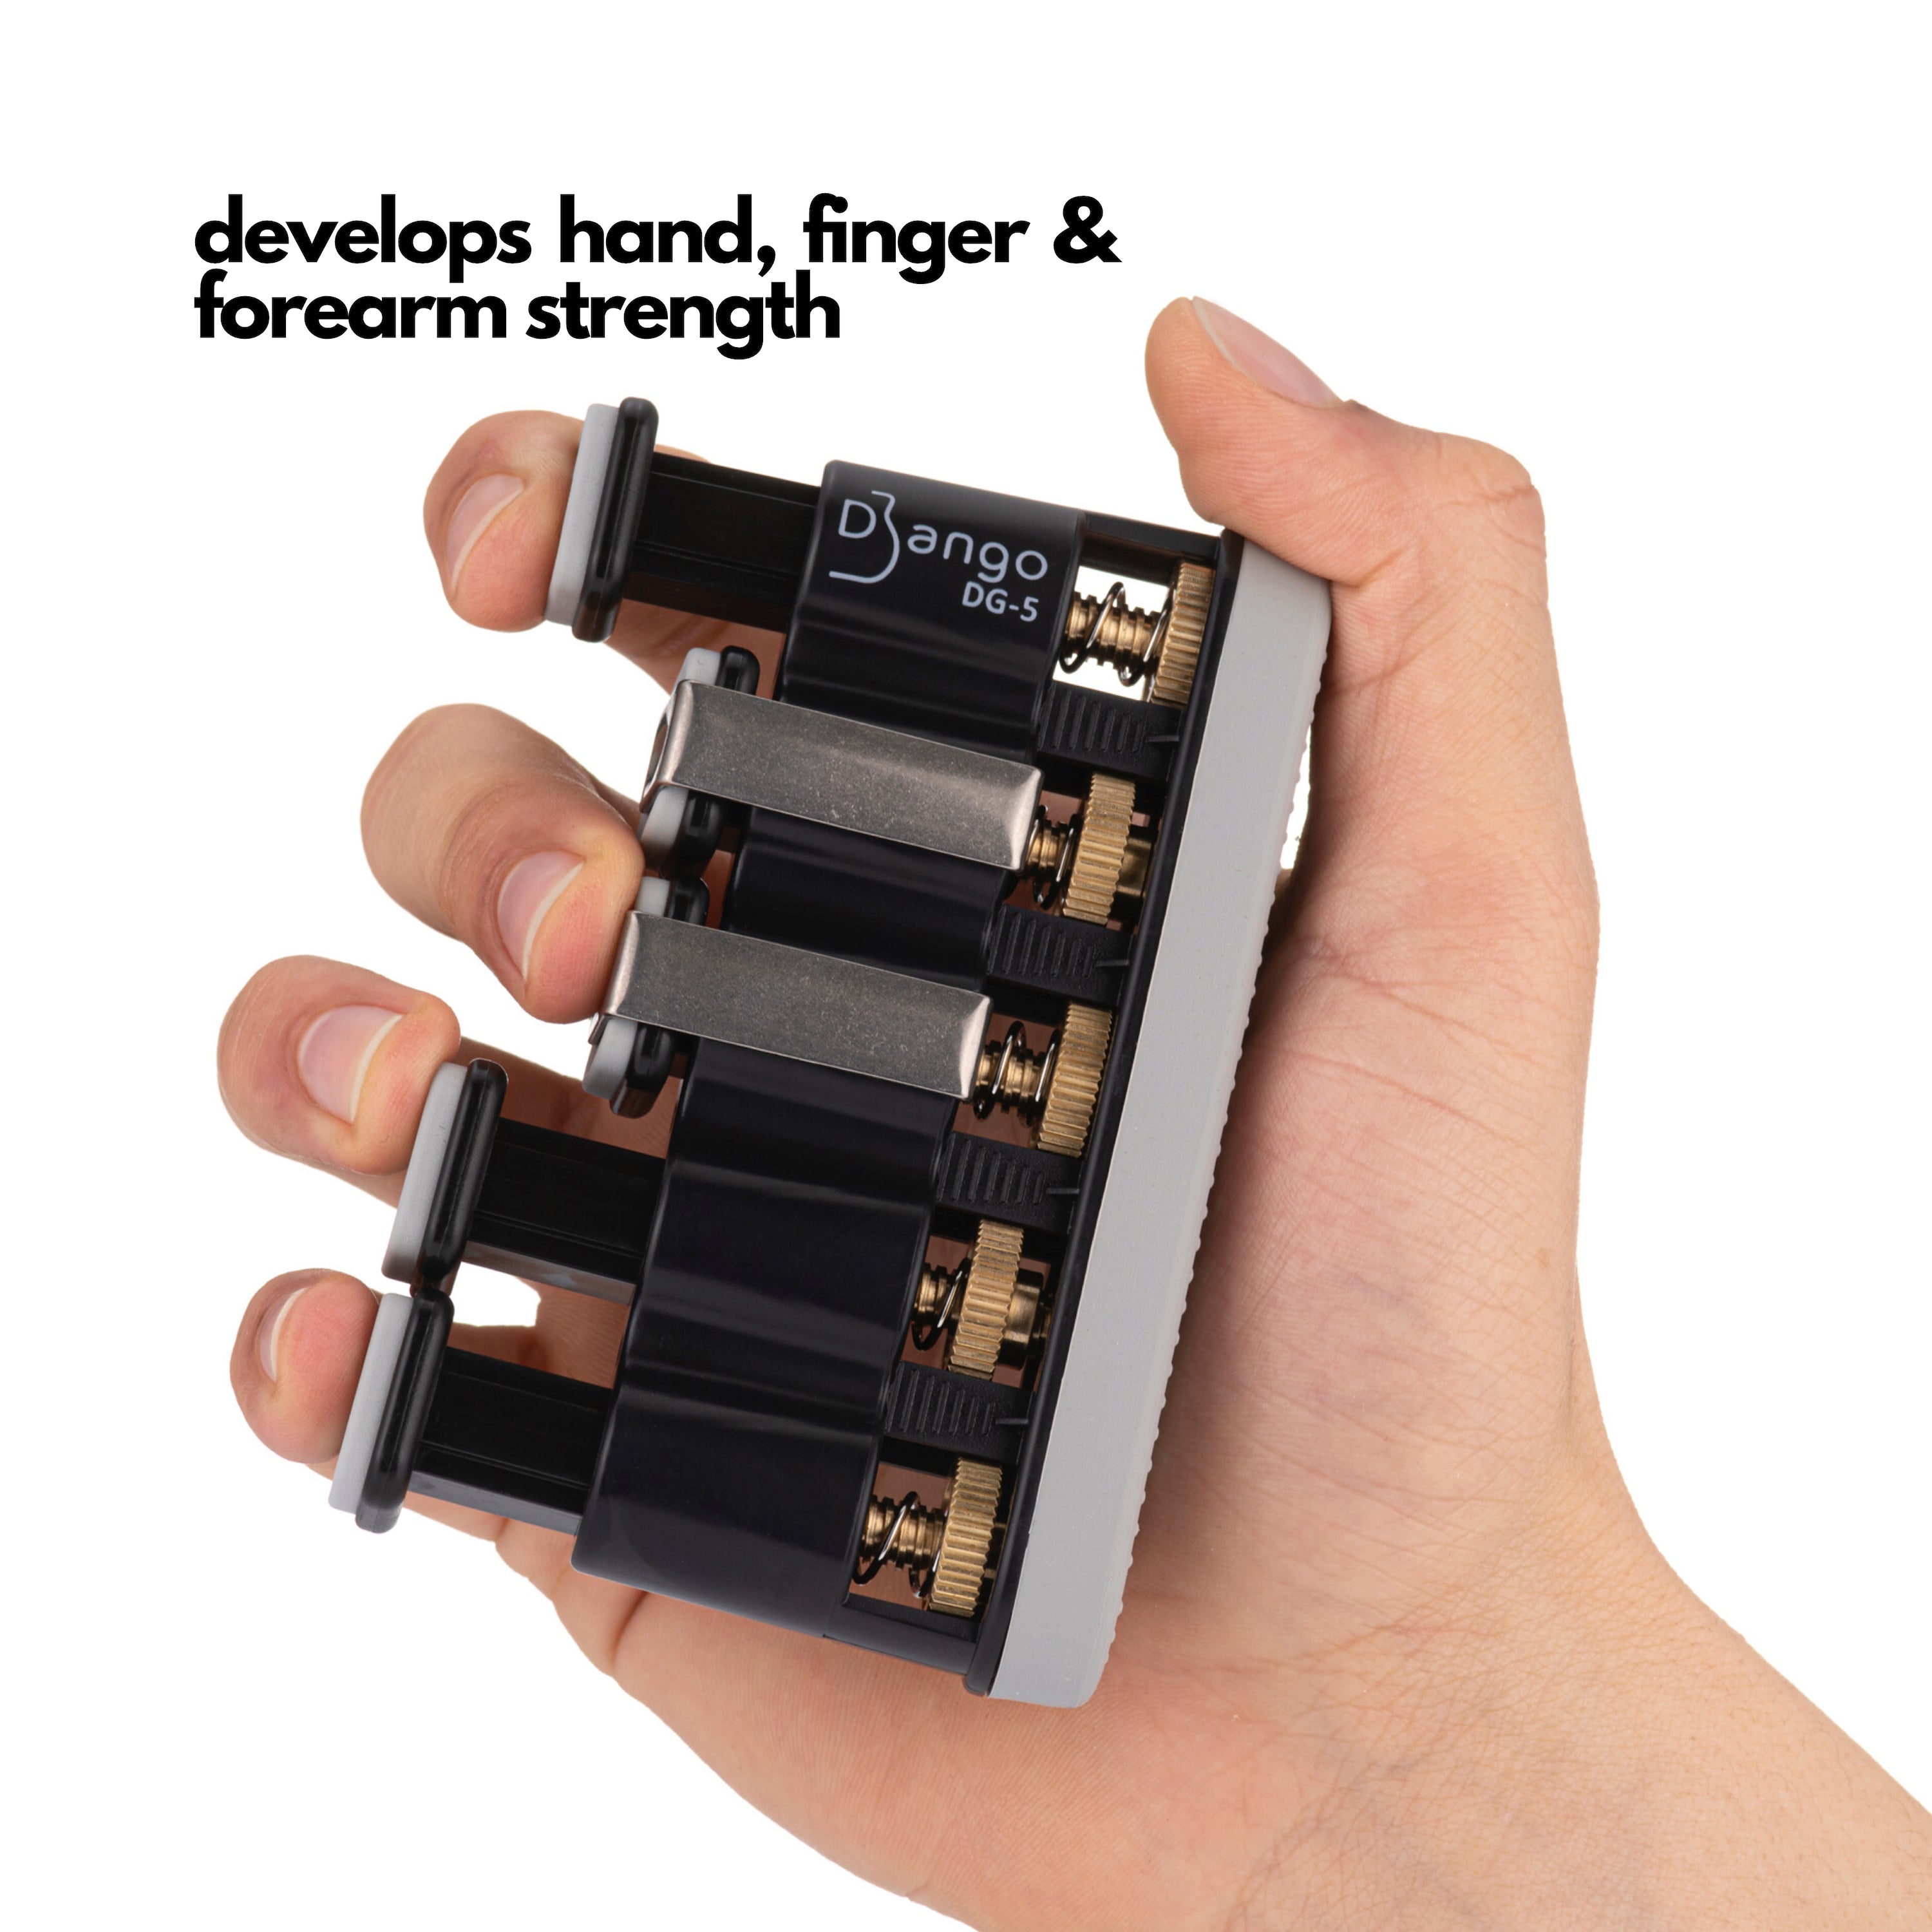 Django DG-5 Finger Exerciser